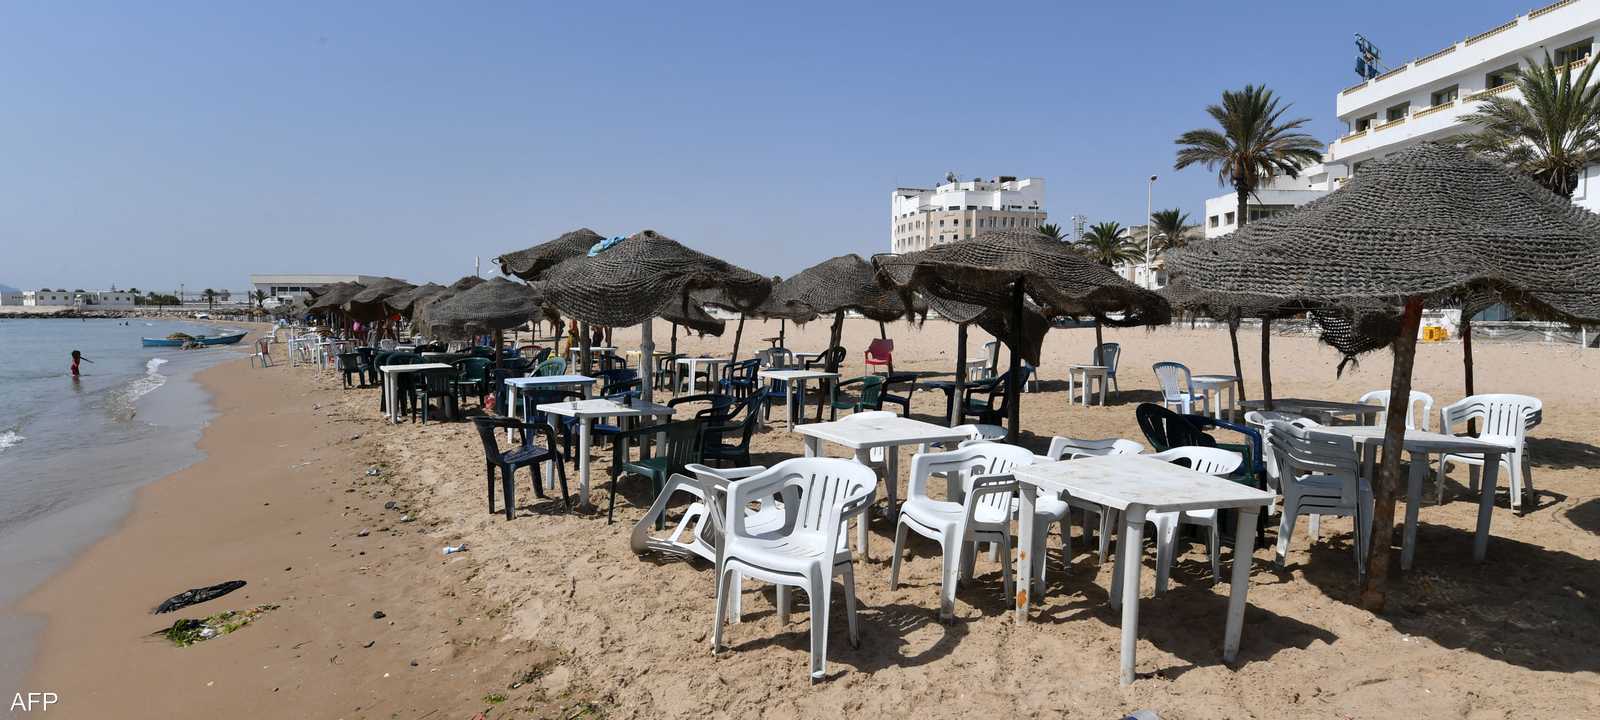 المنتجعات التونسية تعاني غياب السياح